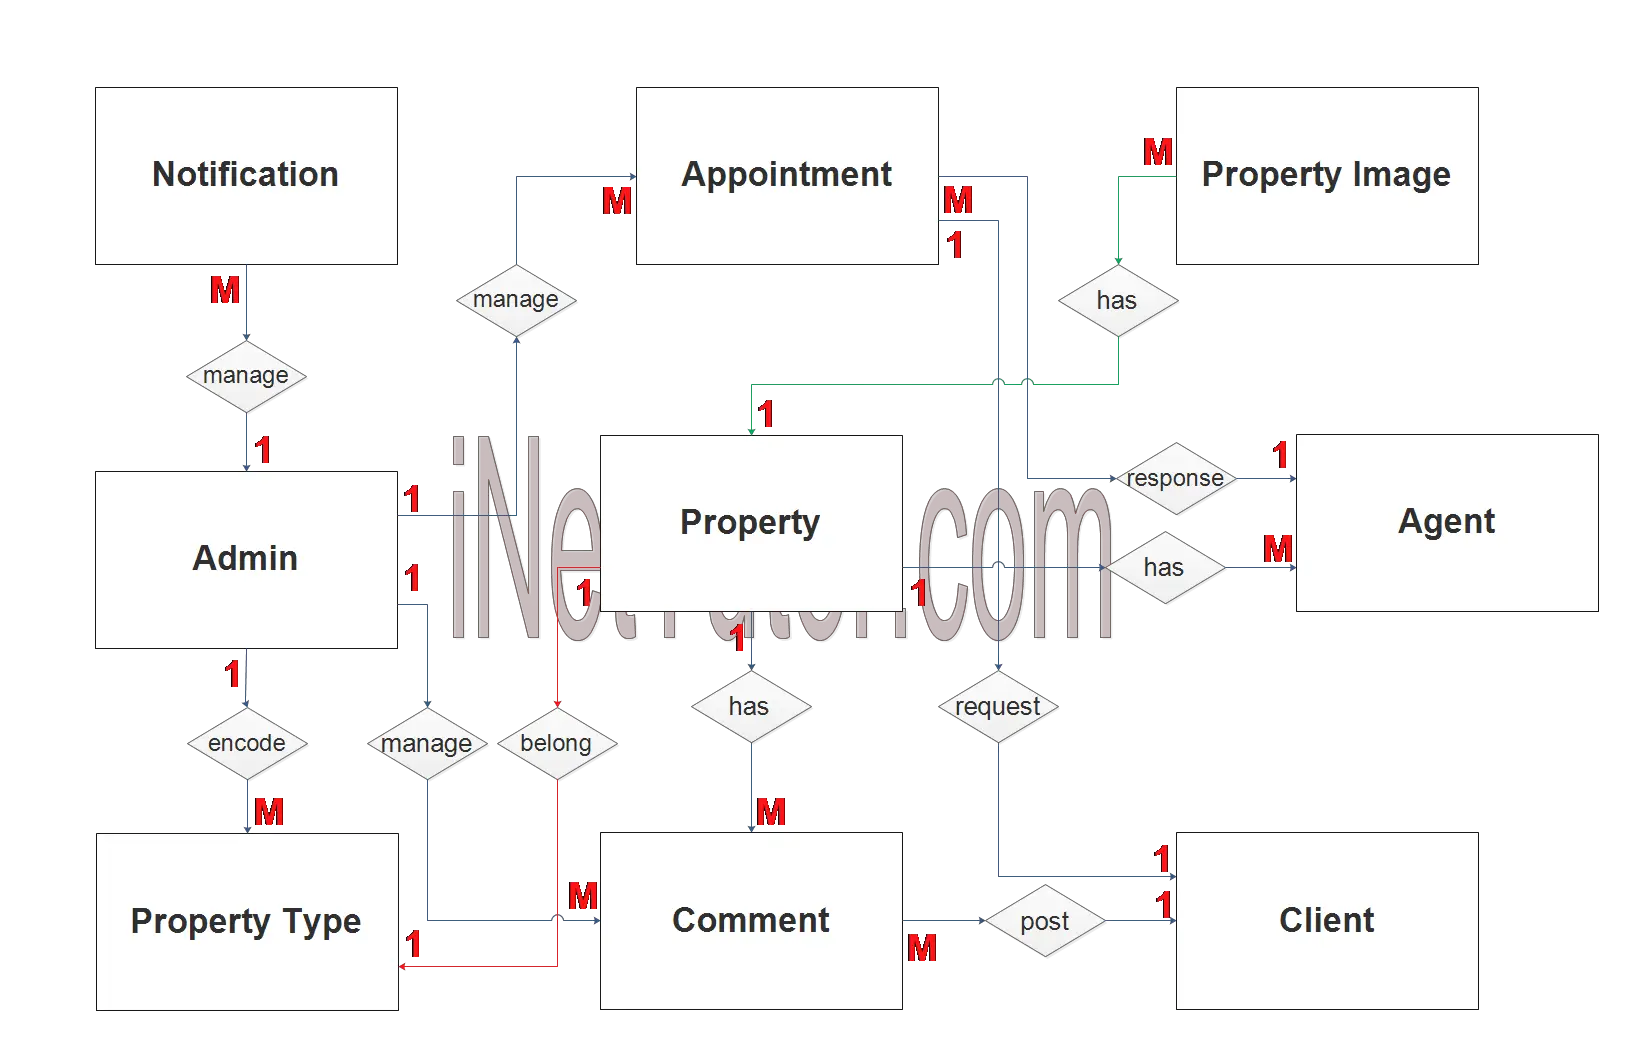 Real Estate Management System ER Diagram - Step 2 Table Relationship